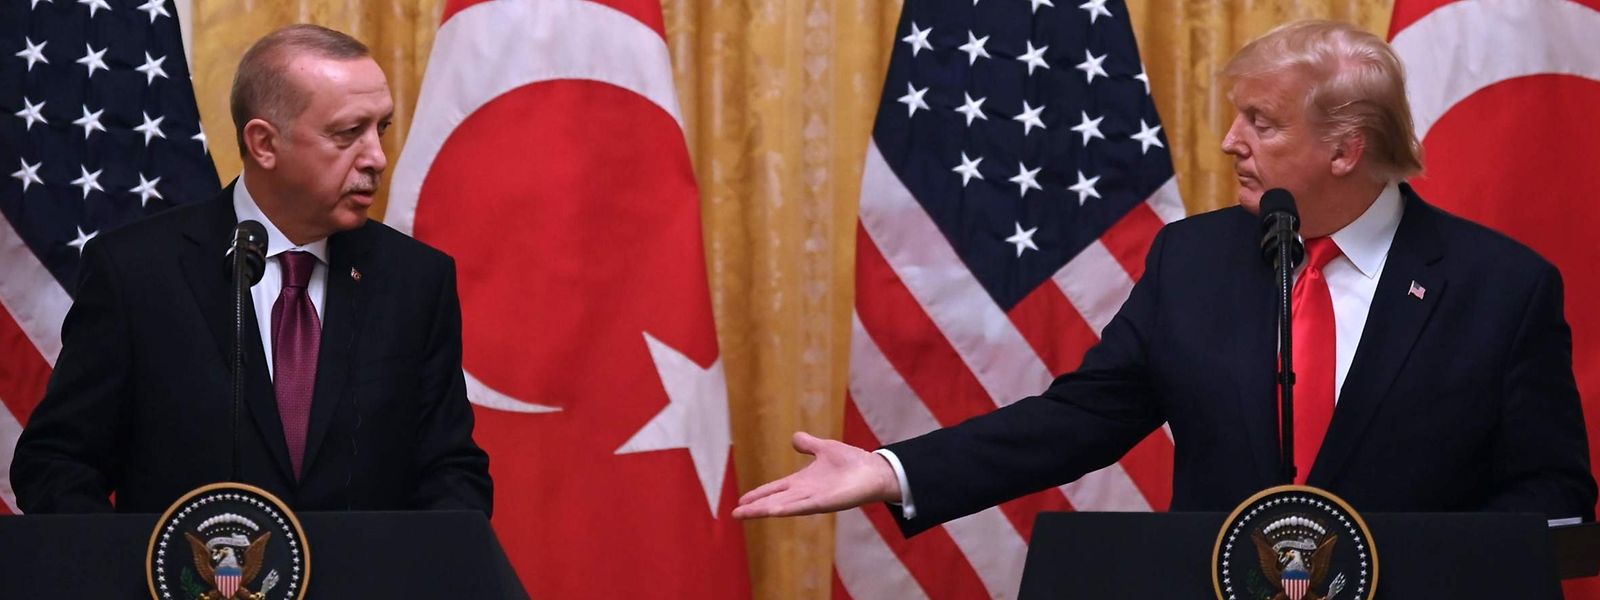 Recep Tayyip Erdogan und Donald Trump bei einer Pressekonferenz am 13. November im Weißen Haus in Washington.